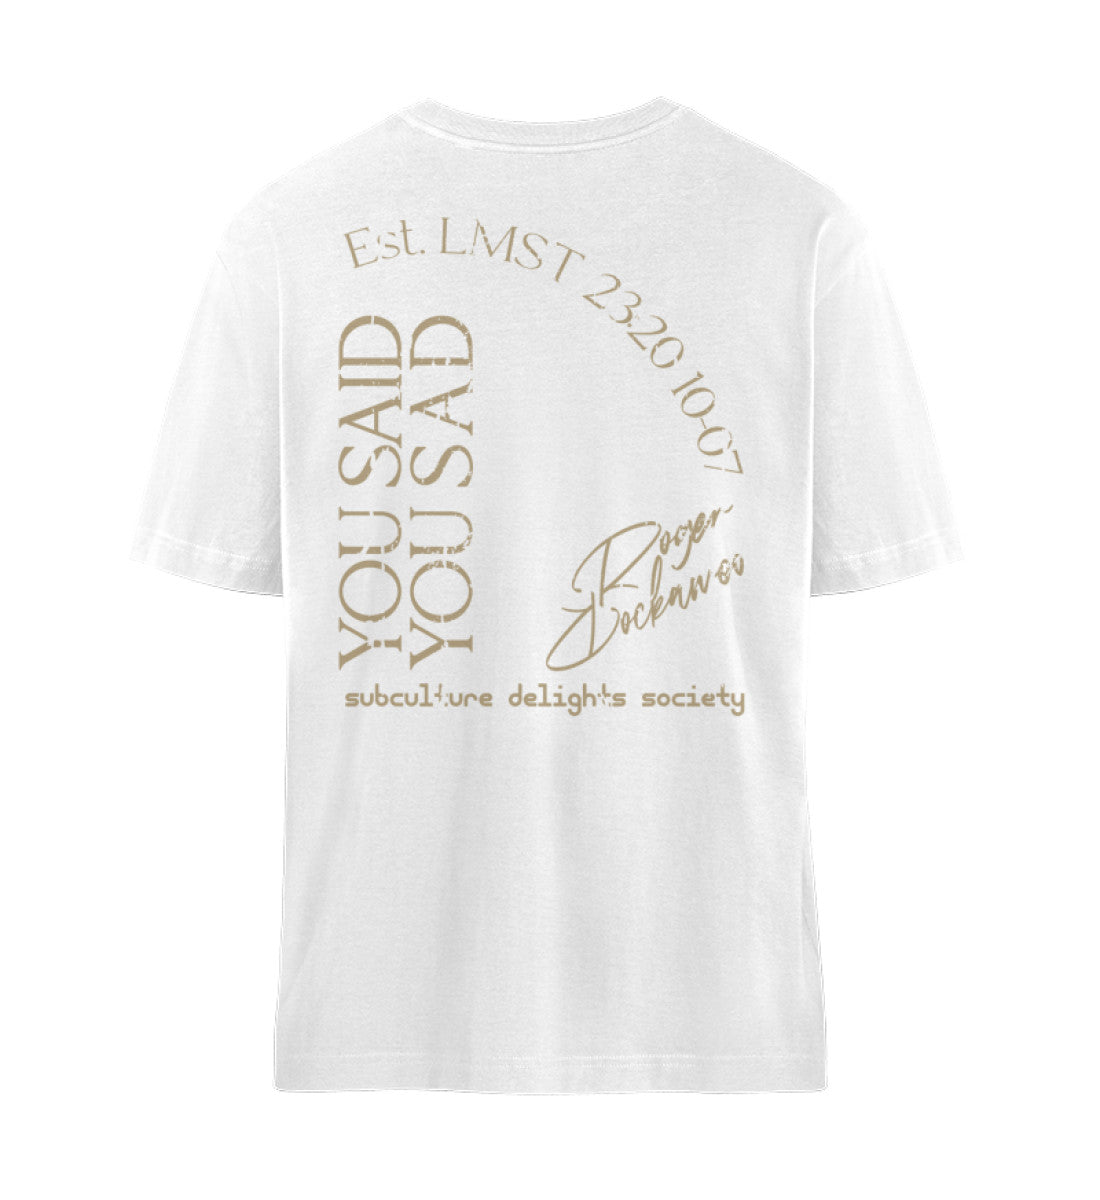 Weißes T-Shirt Unisex Relaxed Fit für Frauen und Männer bedruckt mit dem Design der Roger Rockawoo Clothing Kollektion you said you sad